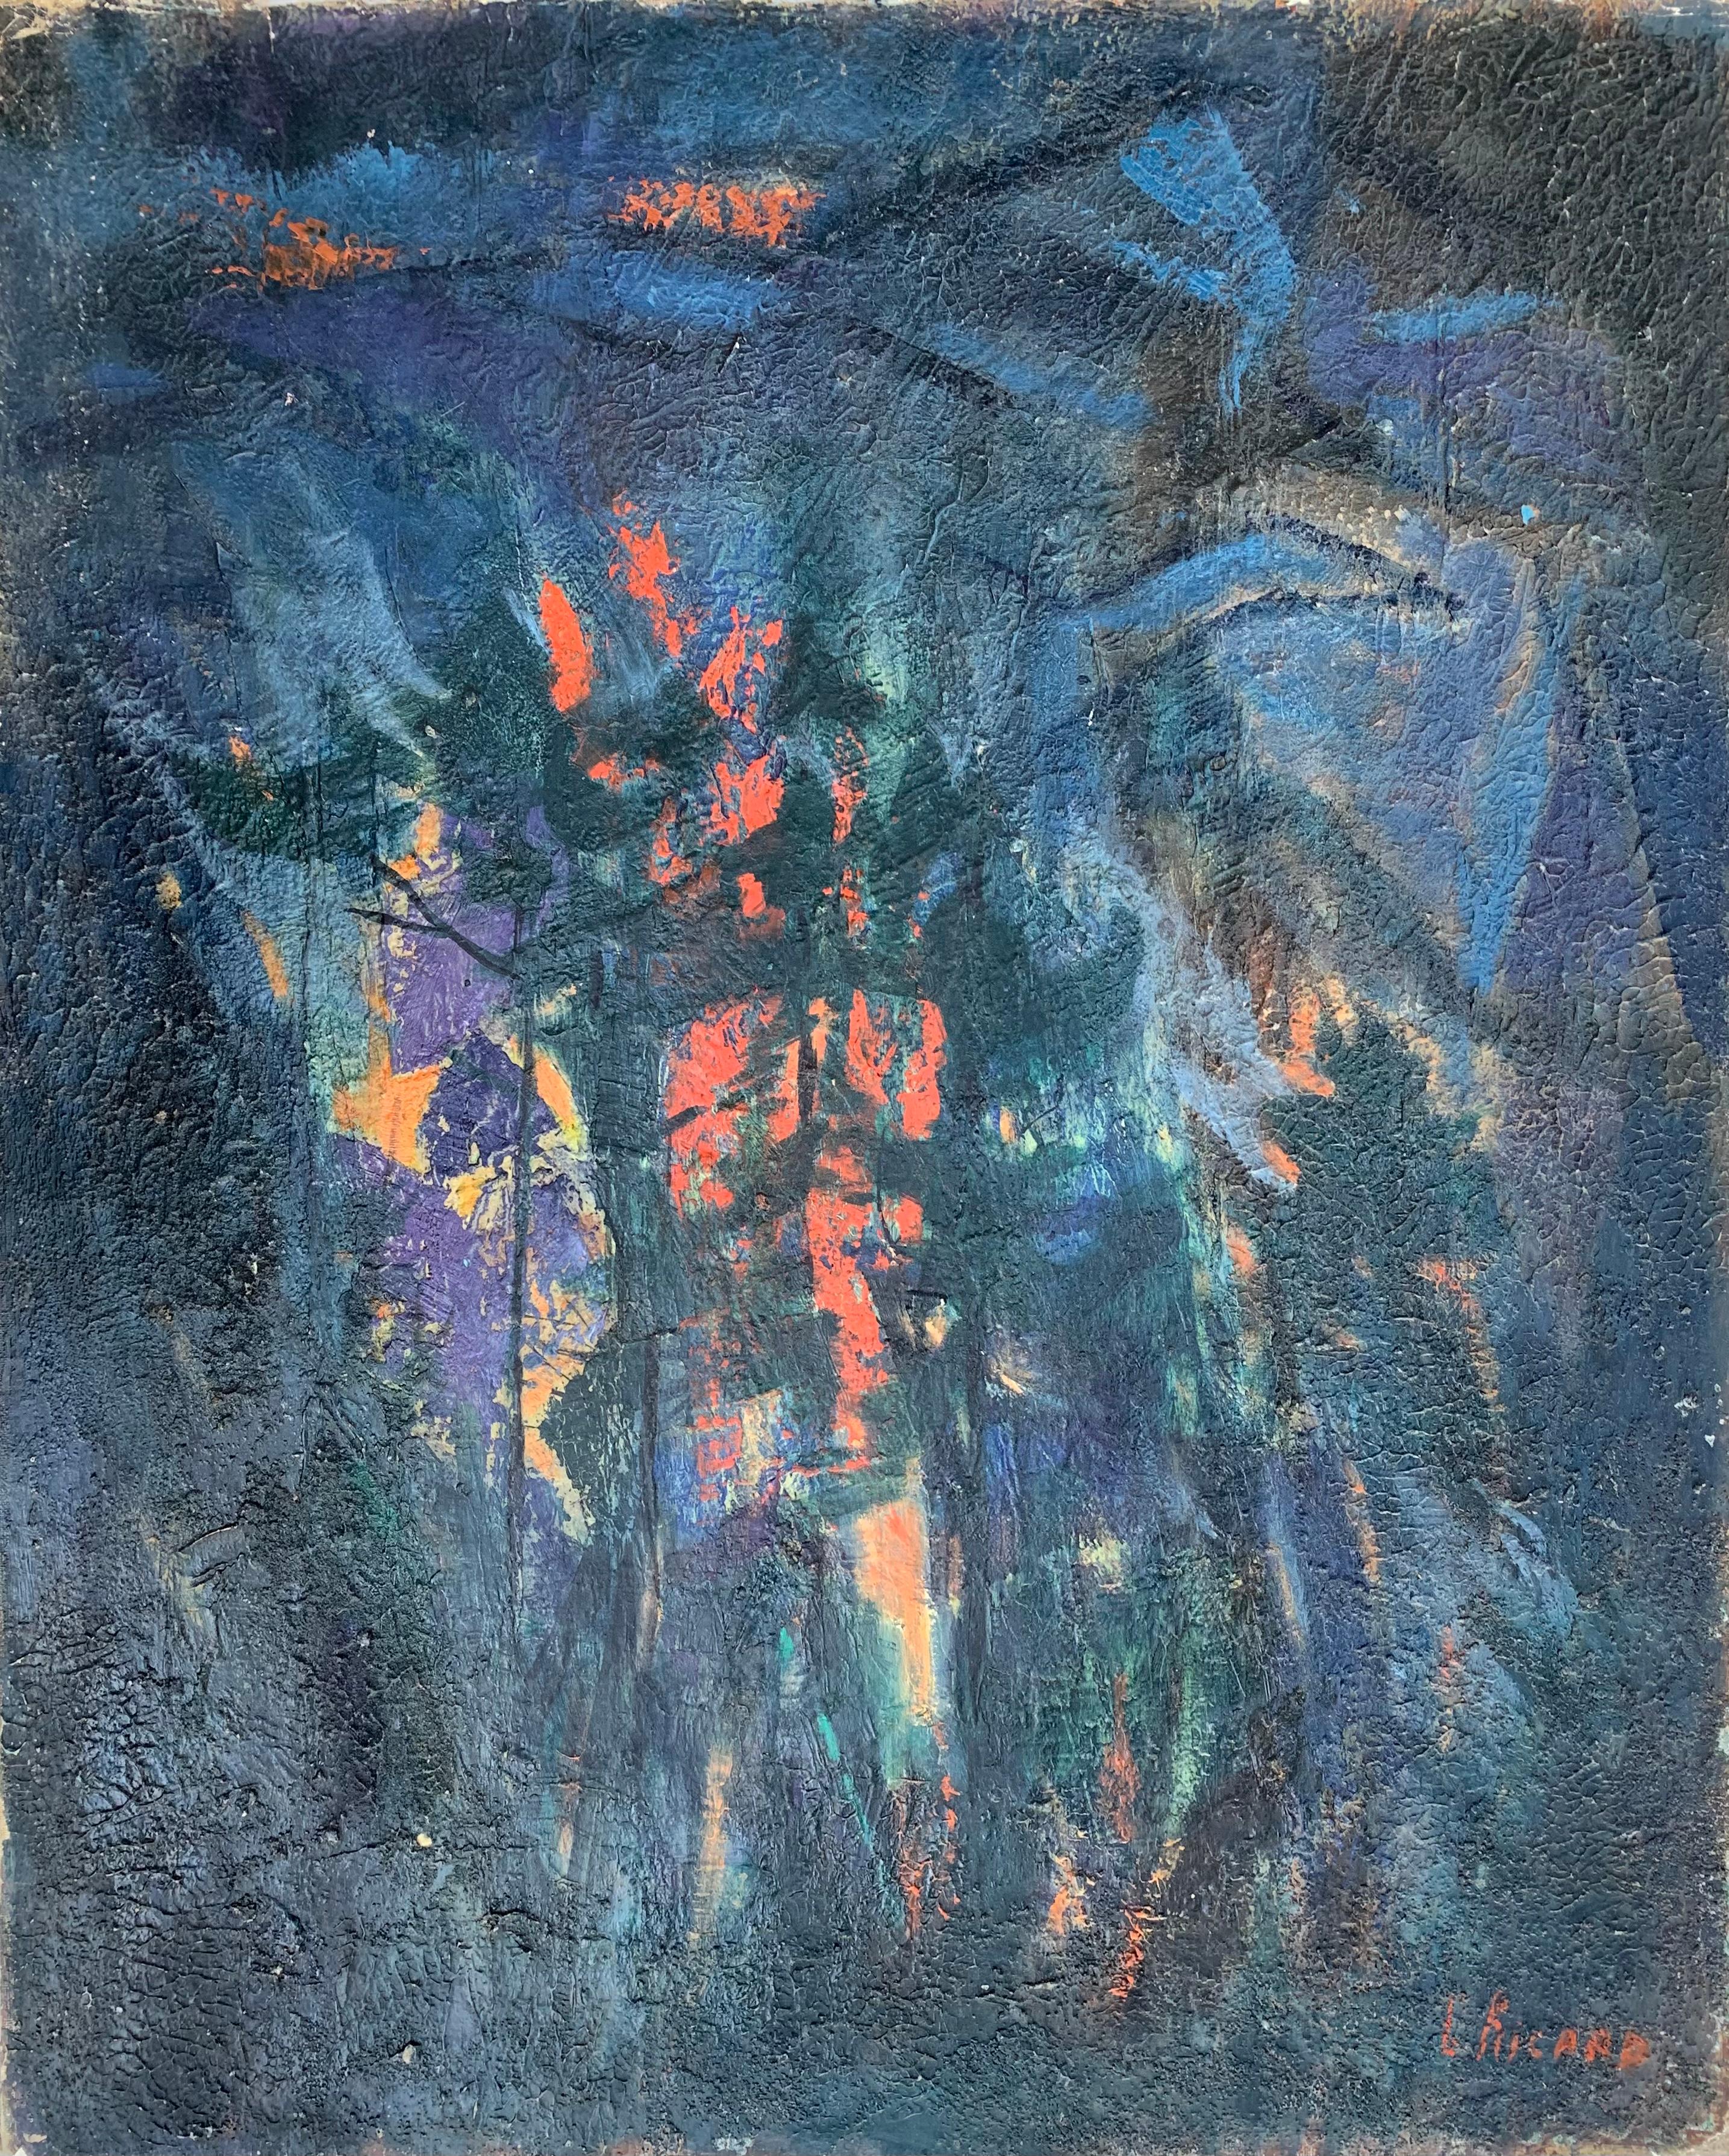 the Fire", paysage nocturne de Gabrielle Ricard - Cordingley. Année 1967. 